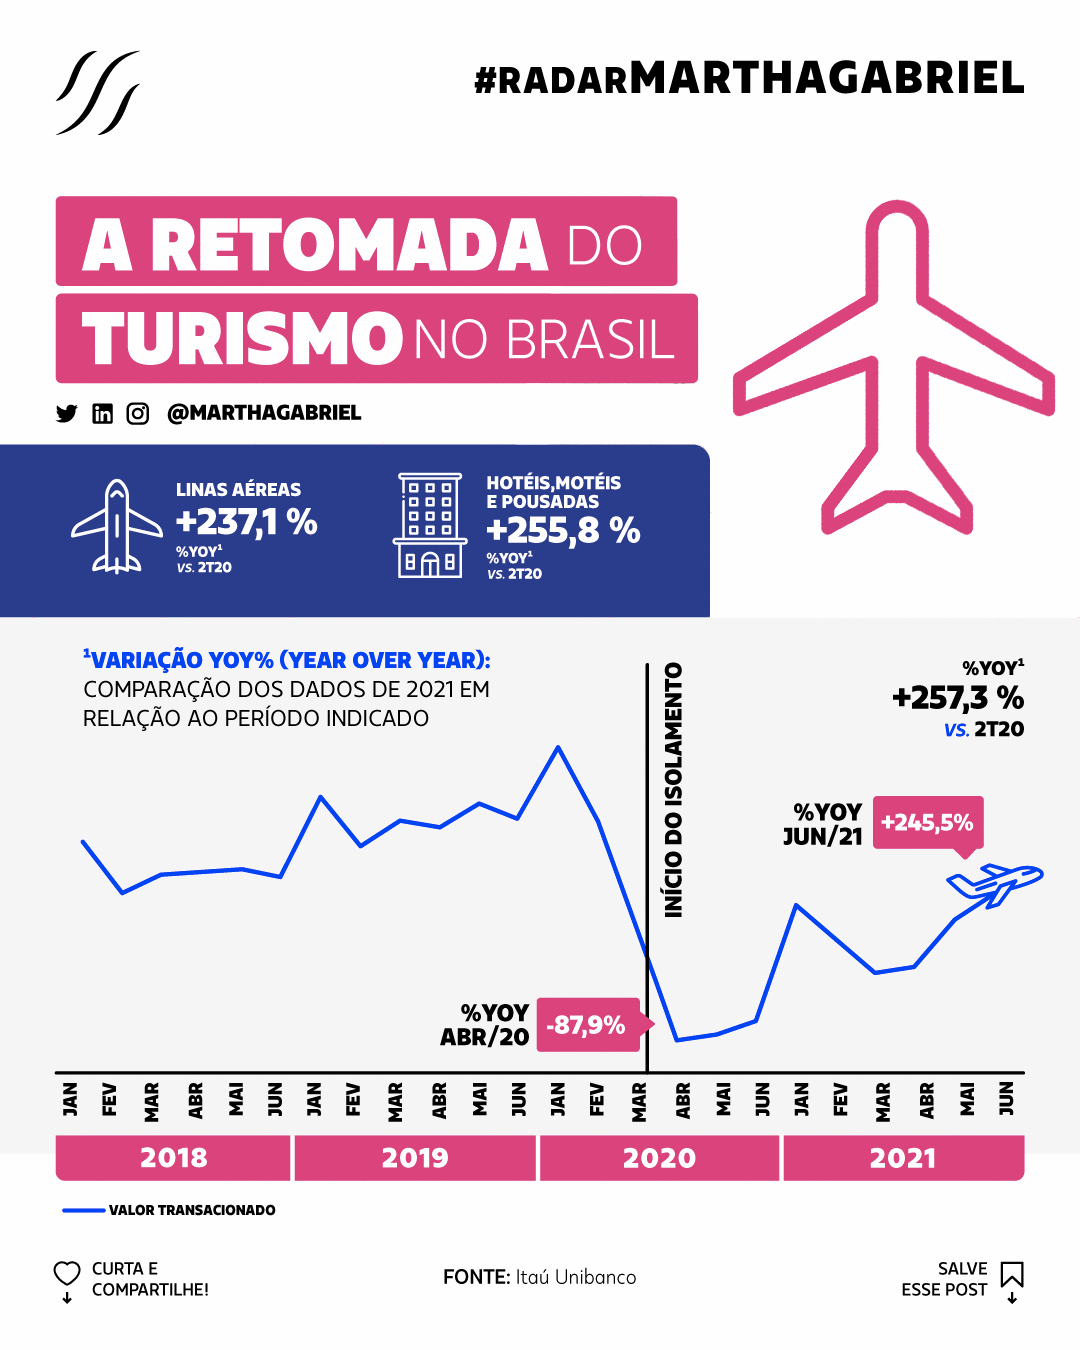 A retomada do turismo no Brasil